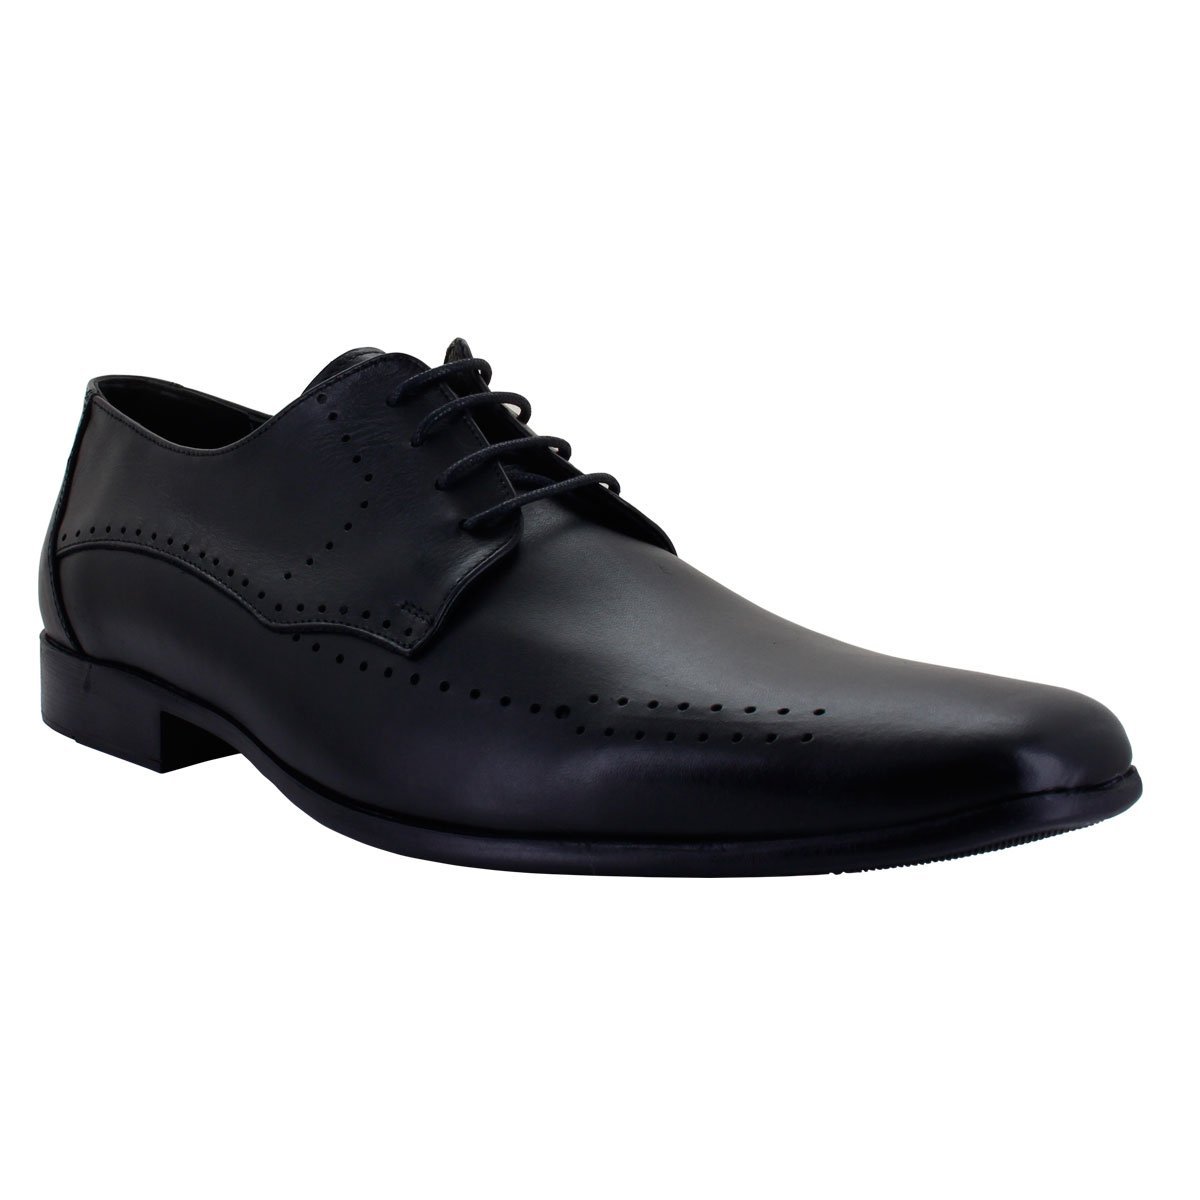 Zapato Tipo Choclo Color Negro con Agujeta Moderof